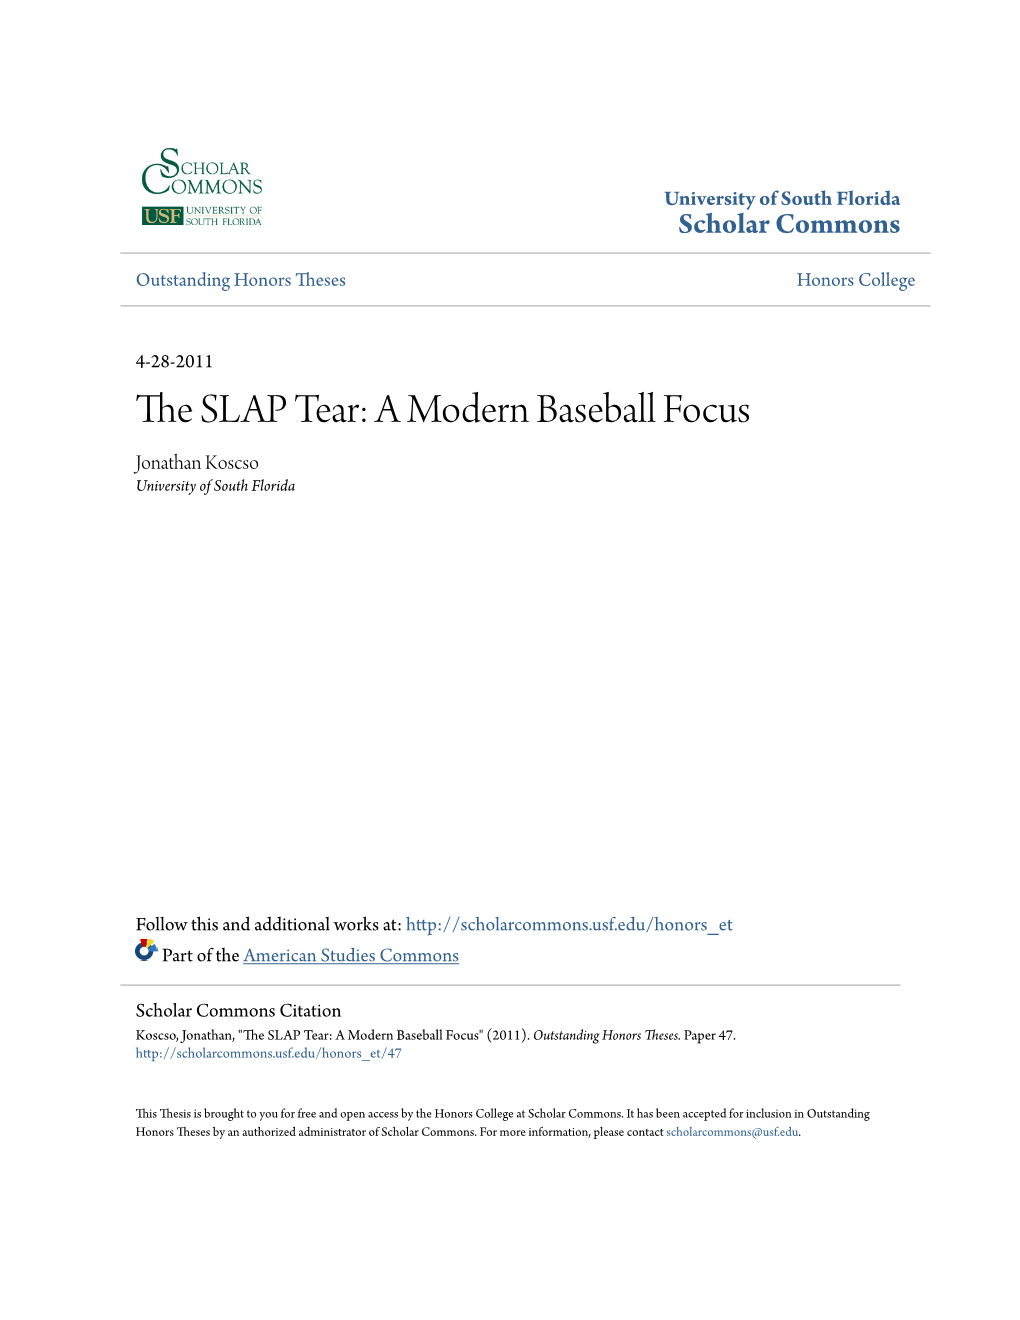 The SLAP Tear: a Modern Baseball Focus